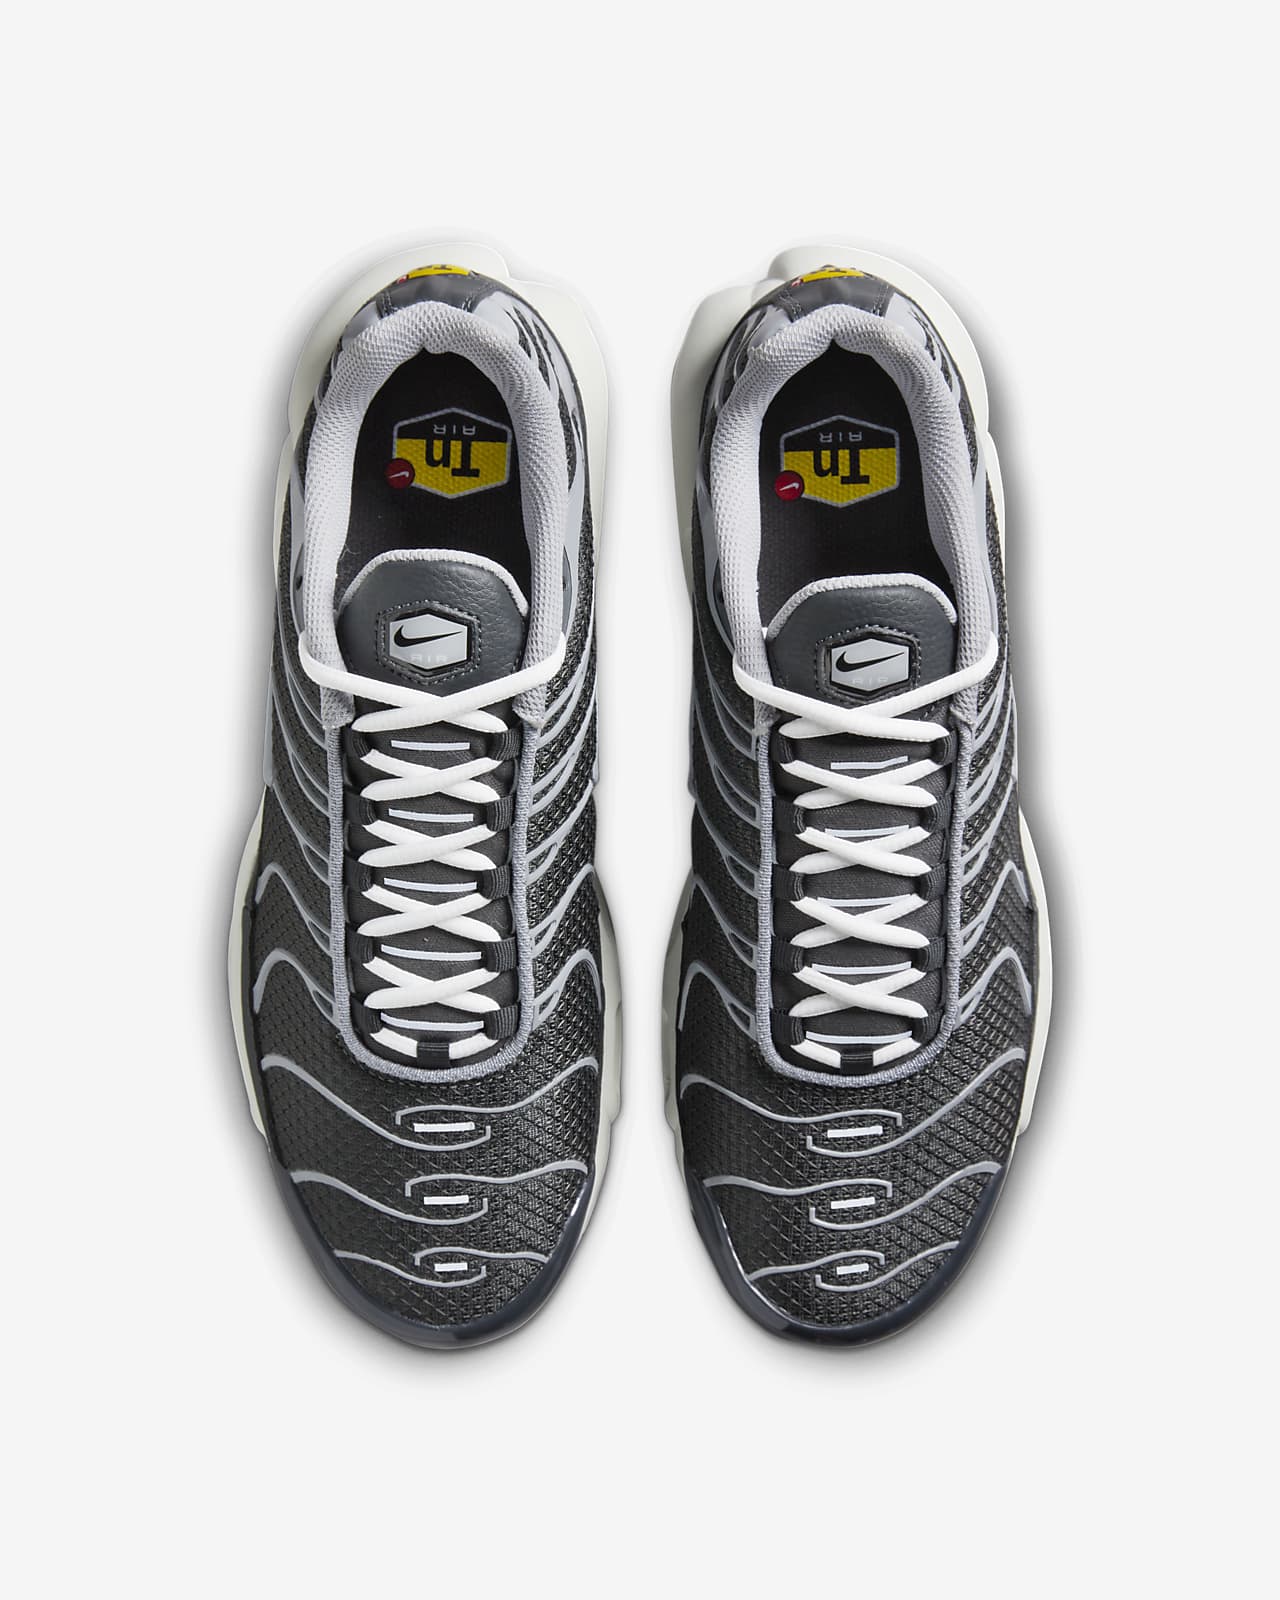 Nike Air Max Plus SE Men's Shoes